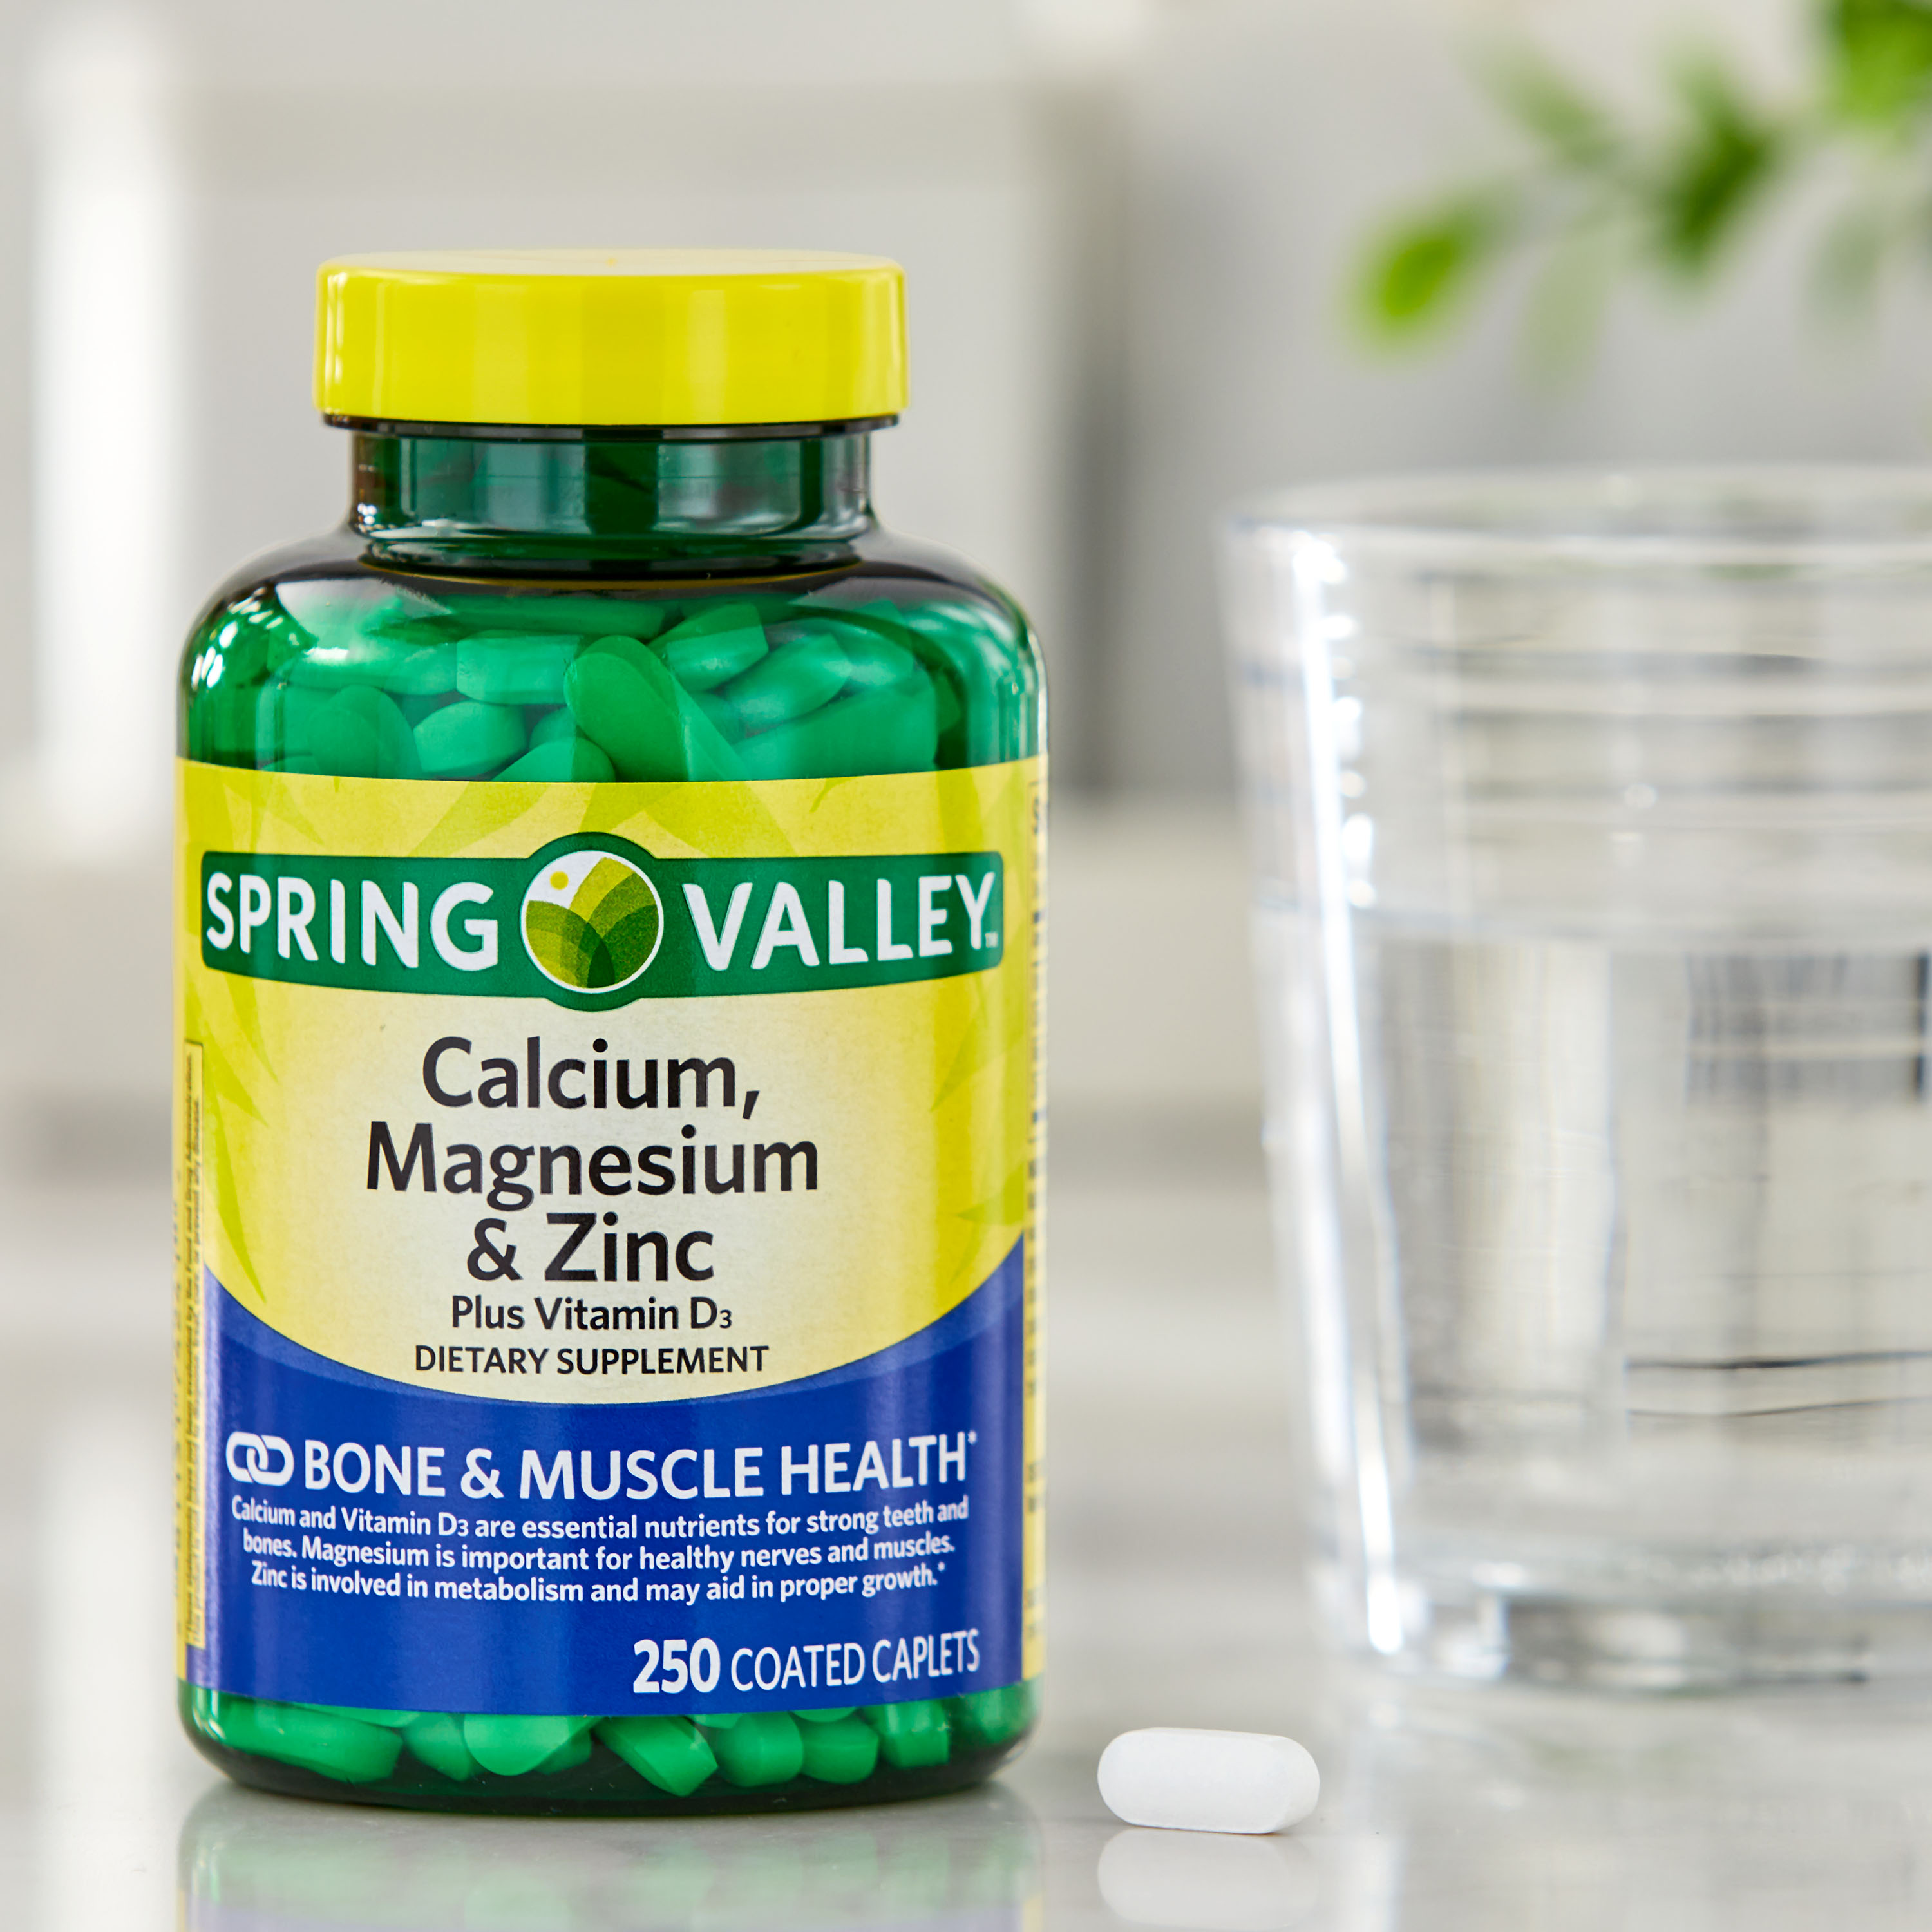 Spring Valley Calcium, Magnesium & Zinc Plus Vitamin D3 Coated Caplets, 250 Count - image 4 of 10